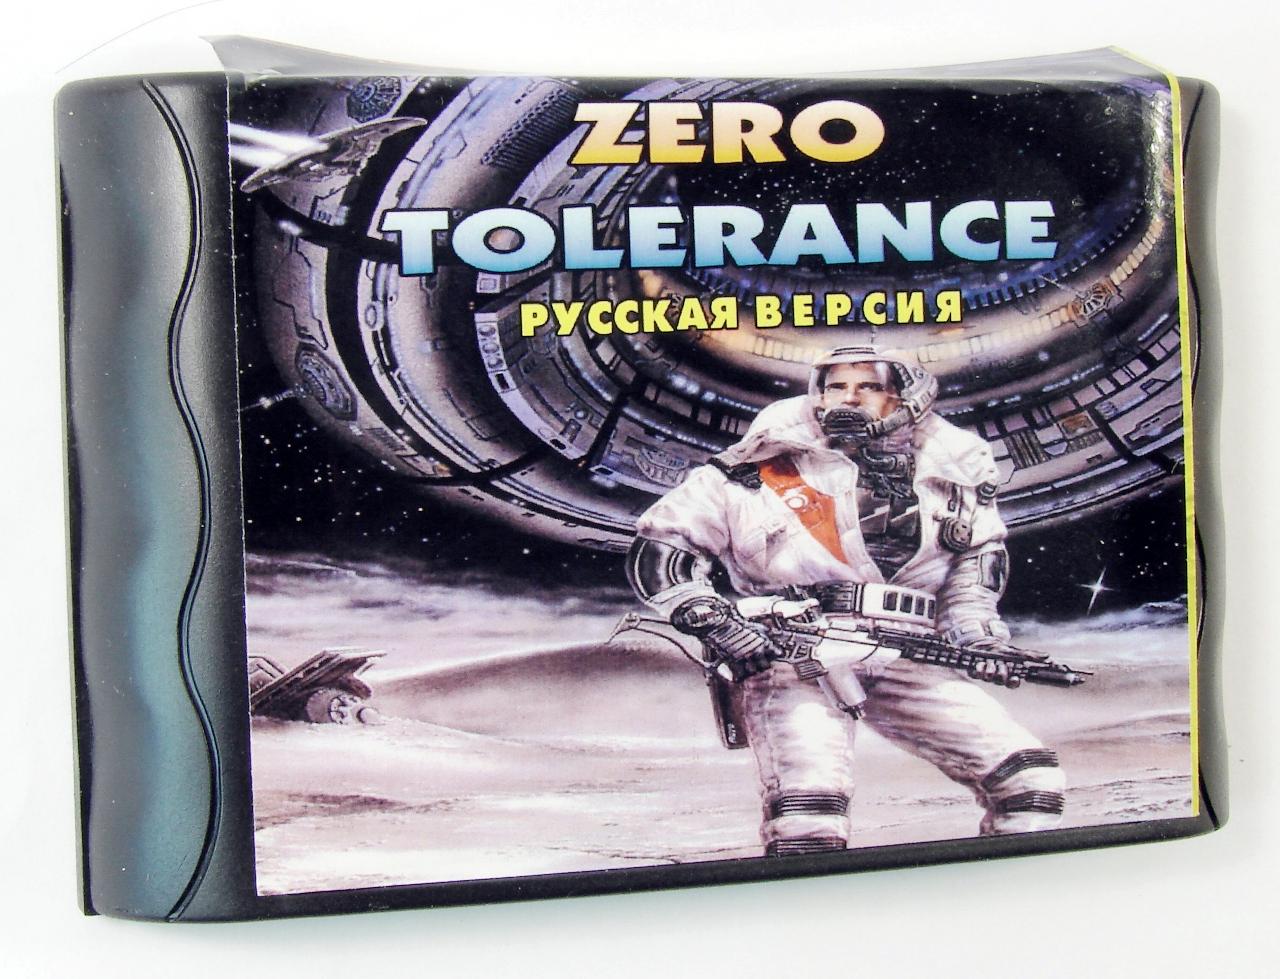 Картридж для Sega Zero Tolerance Beyond (Sega)